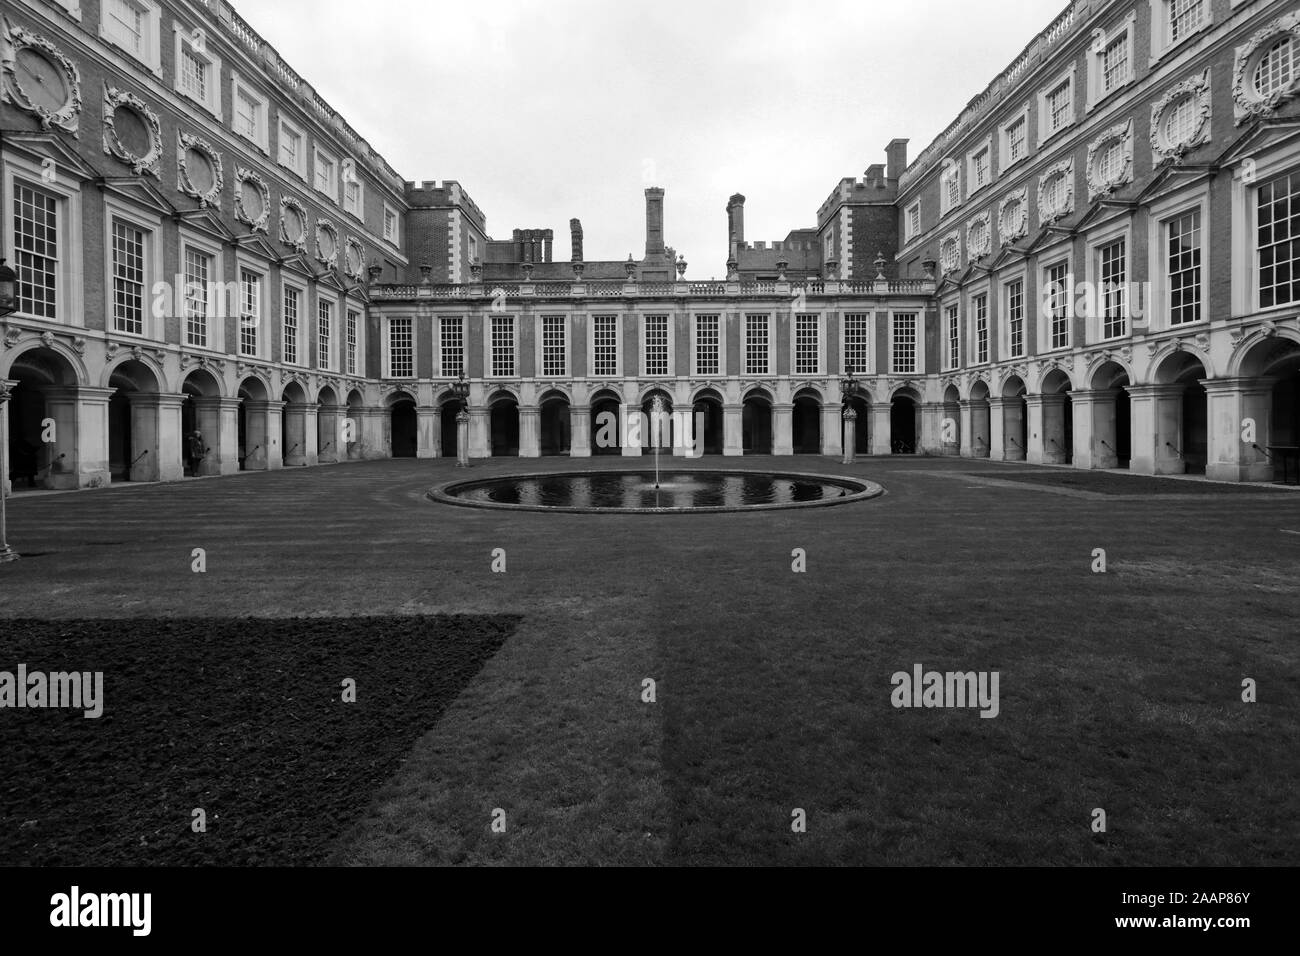 Vue sur cour Fontaine, Hampton Court Palace, un palais royal, dans le quartier de Richmond upon Thames, London. Banque D'Images